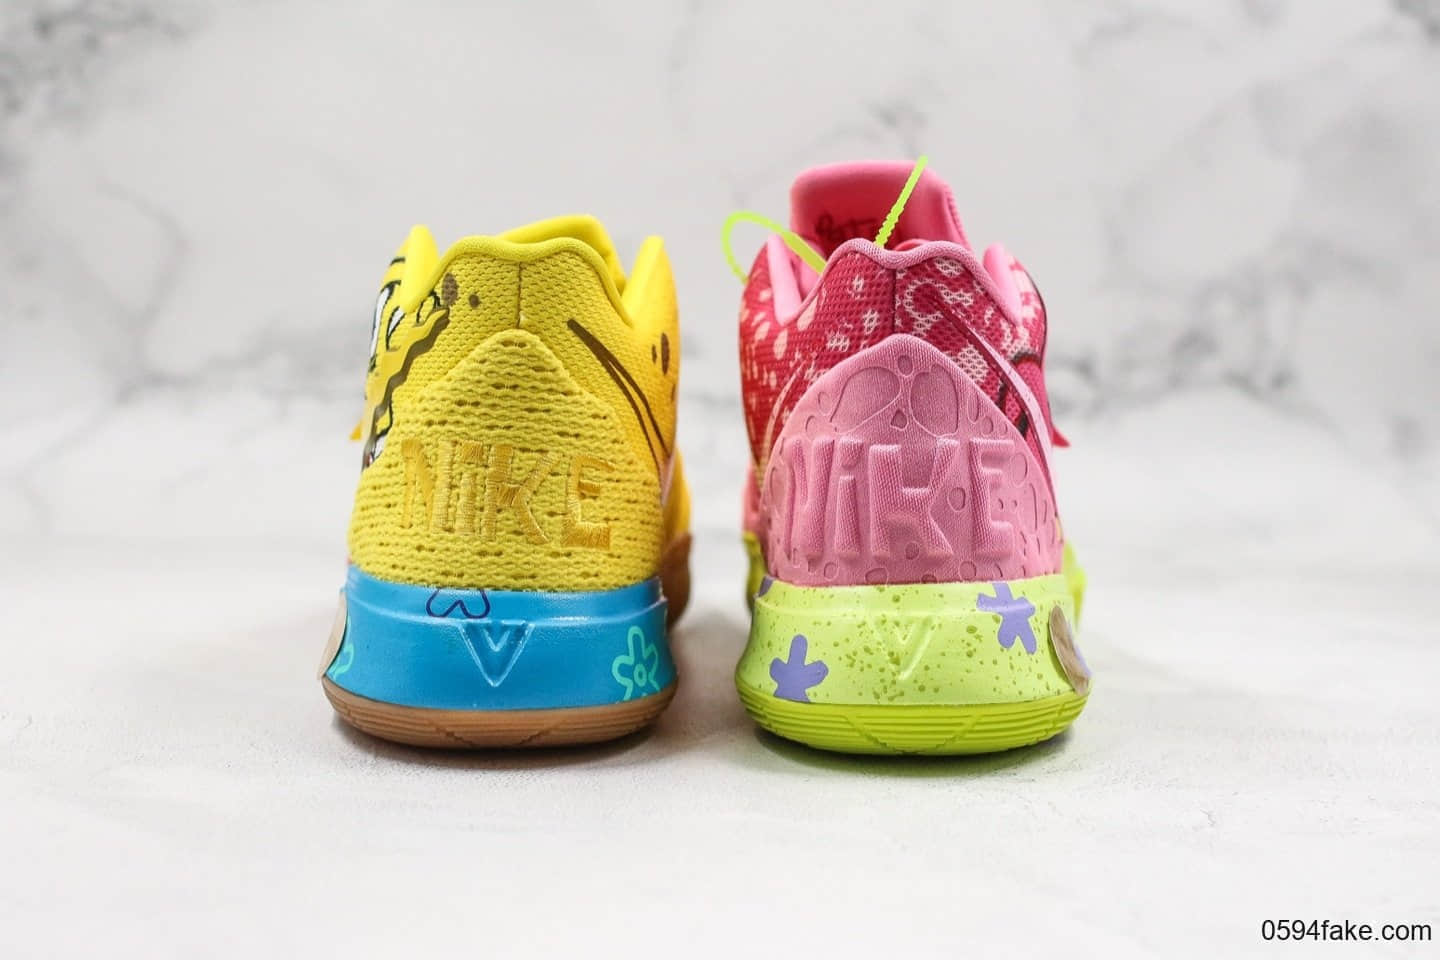 耐克Nike Kyrie 5 PE x Spongebob纯原版本欧文5代联名海绵宝宝派大星鸳鸯配色室内外实战休闲运动篮球鞋 货号：CJ6951-700